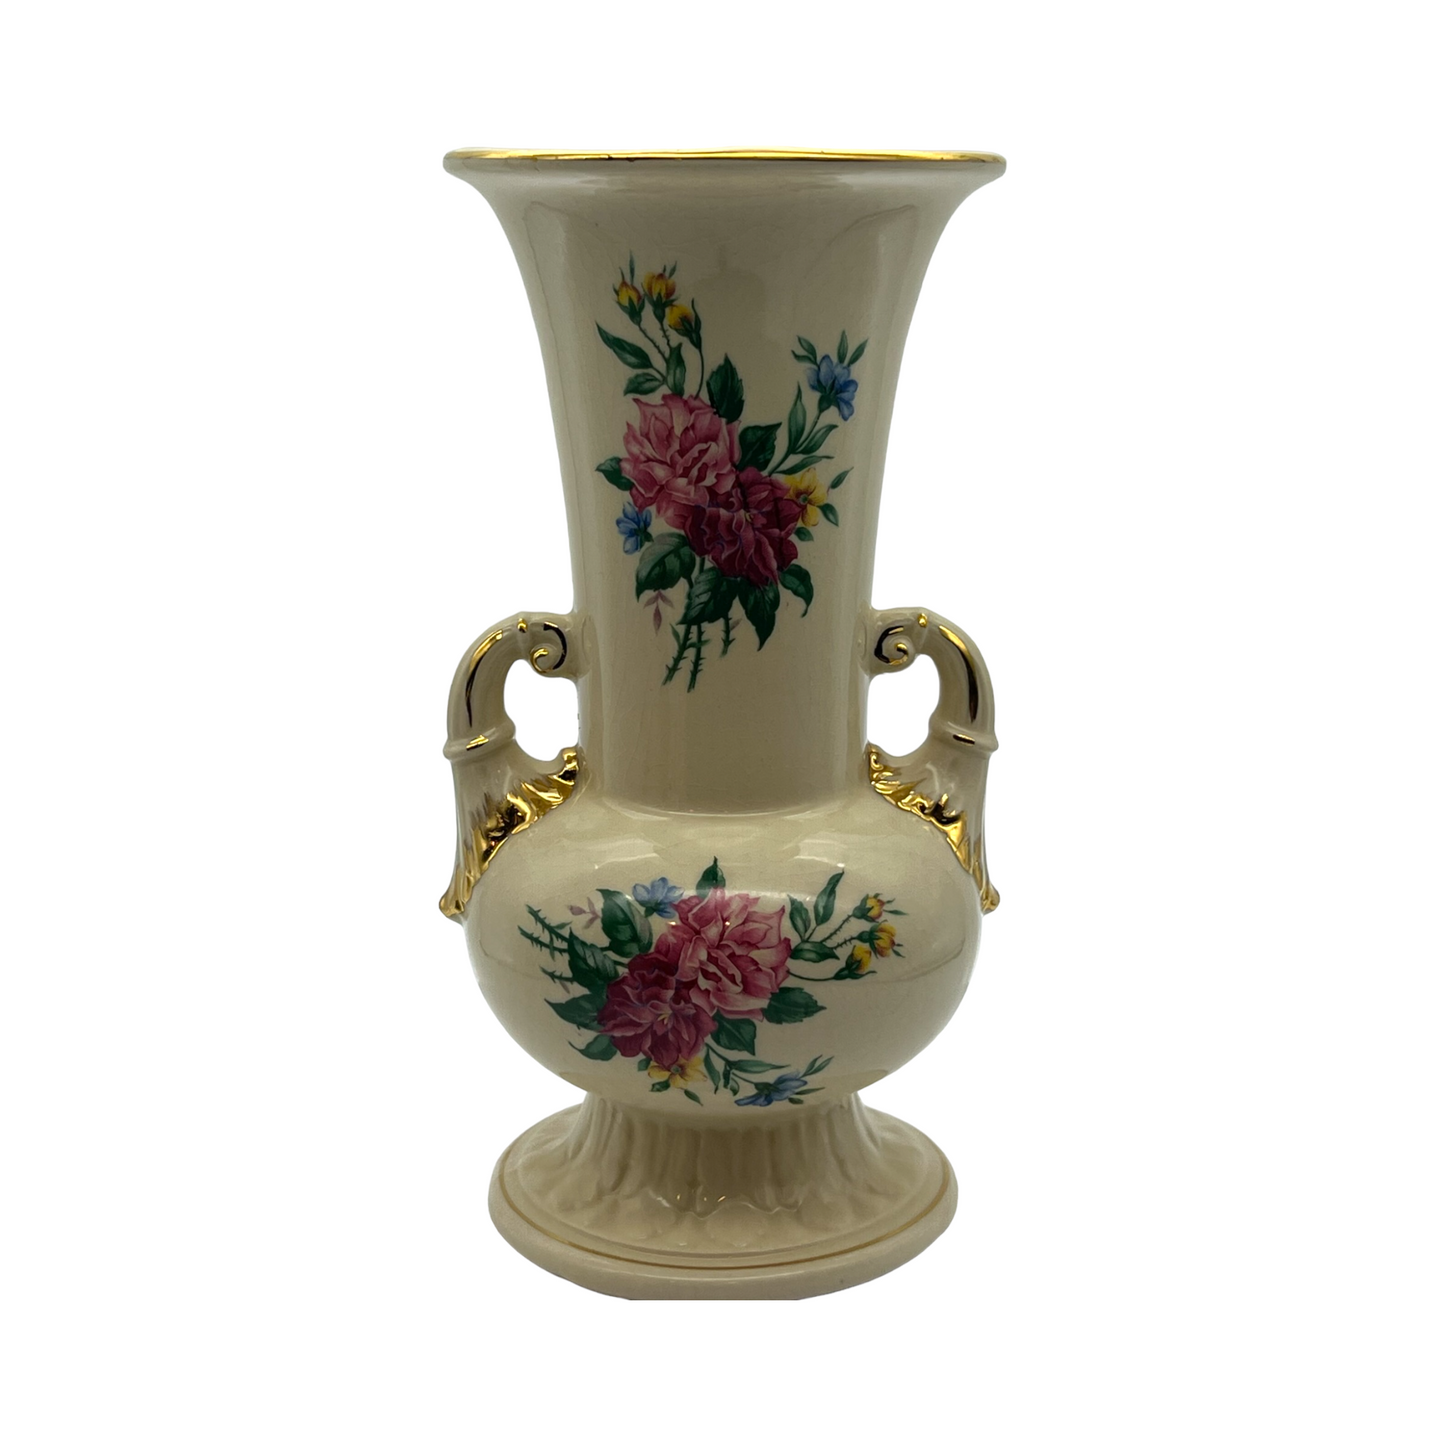 Royal Copley - Double Handle Gold Trim Rachel Decal Vase - Vintage - Large - 8"